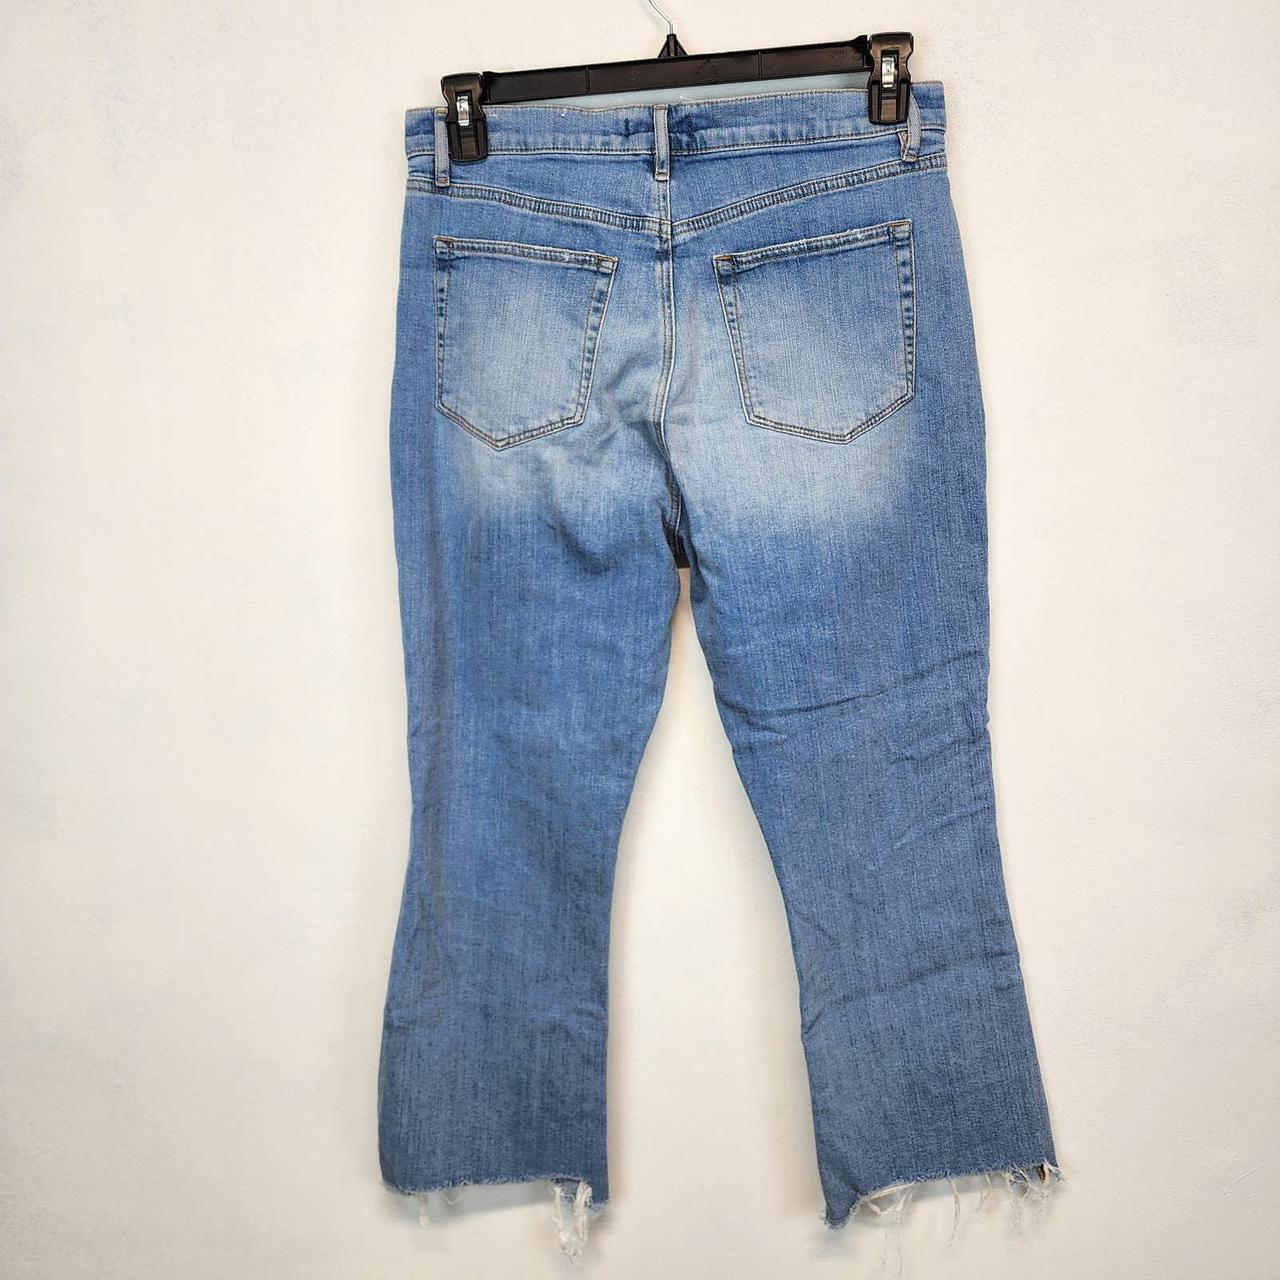 LOFT Light Wash Denim High Waist Boyfriend Jeans women's size 12/31